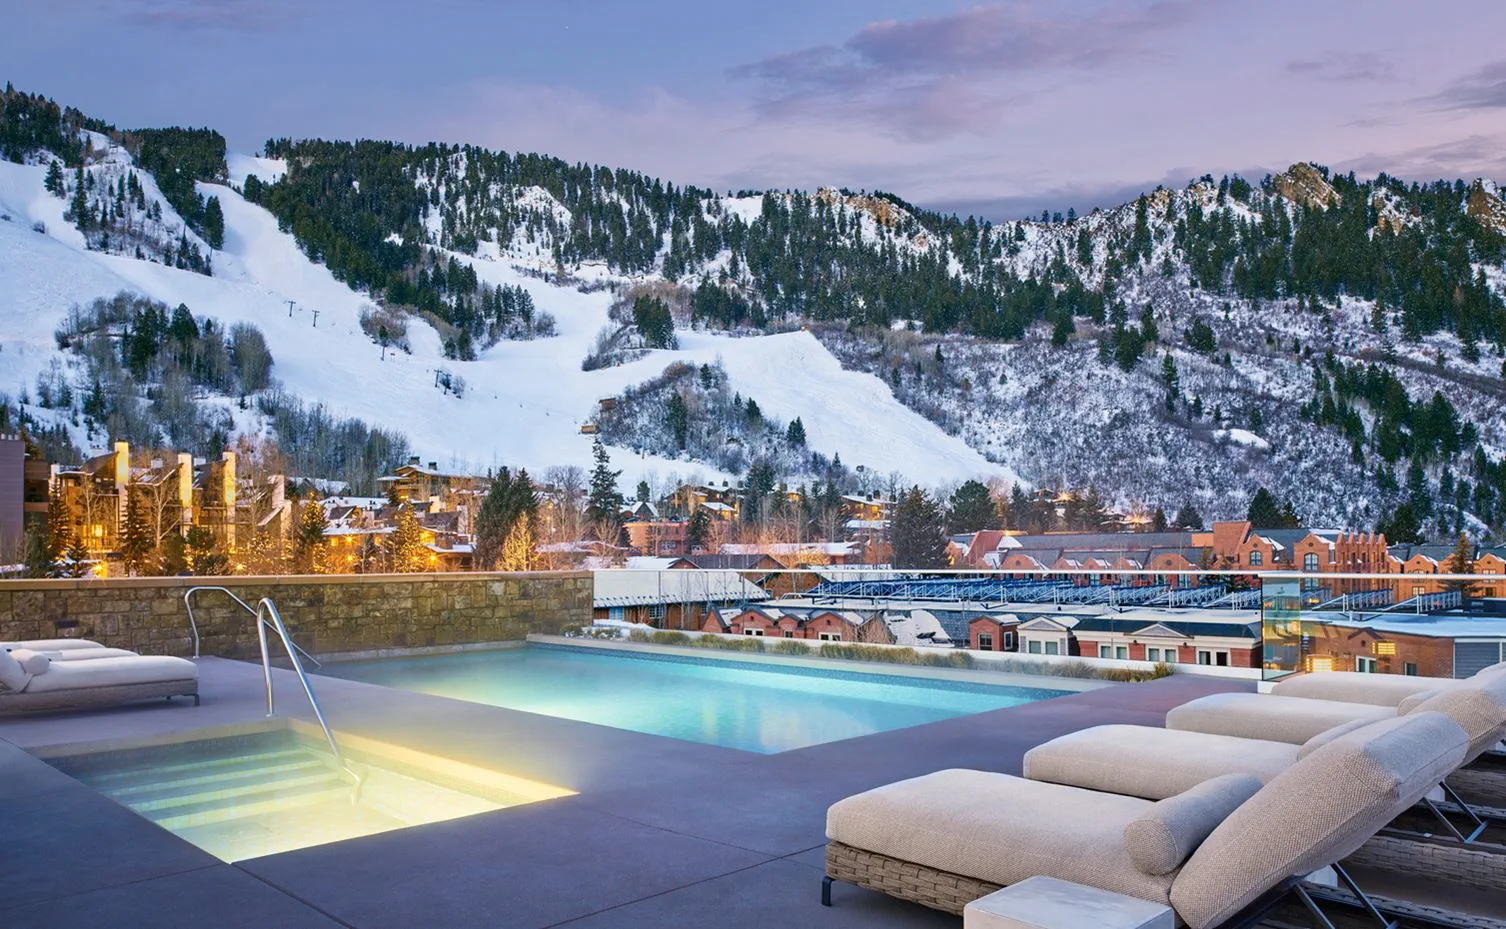 Los nuevos y remodelados hoteles que encontrarás en ASPEN, el famoso destino de ski